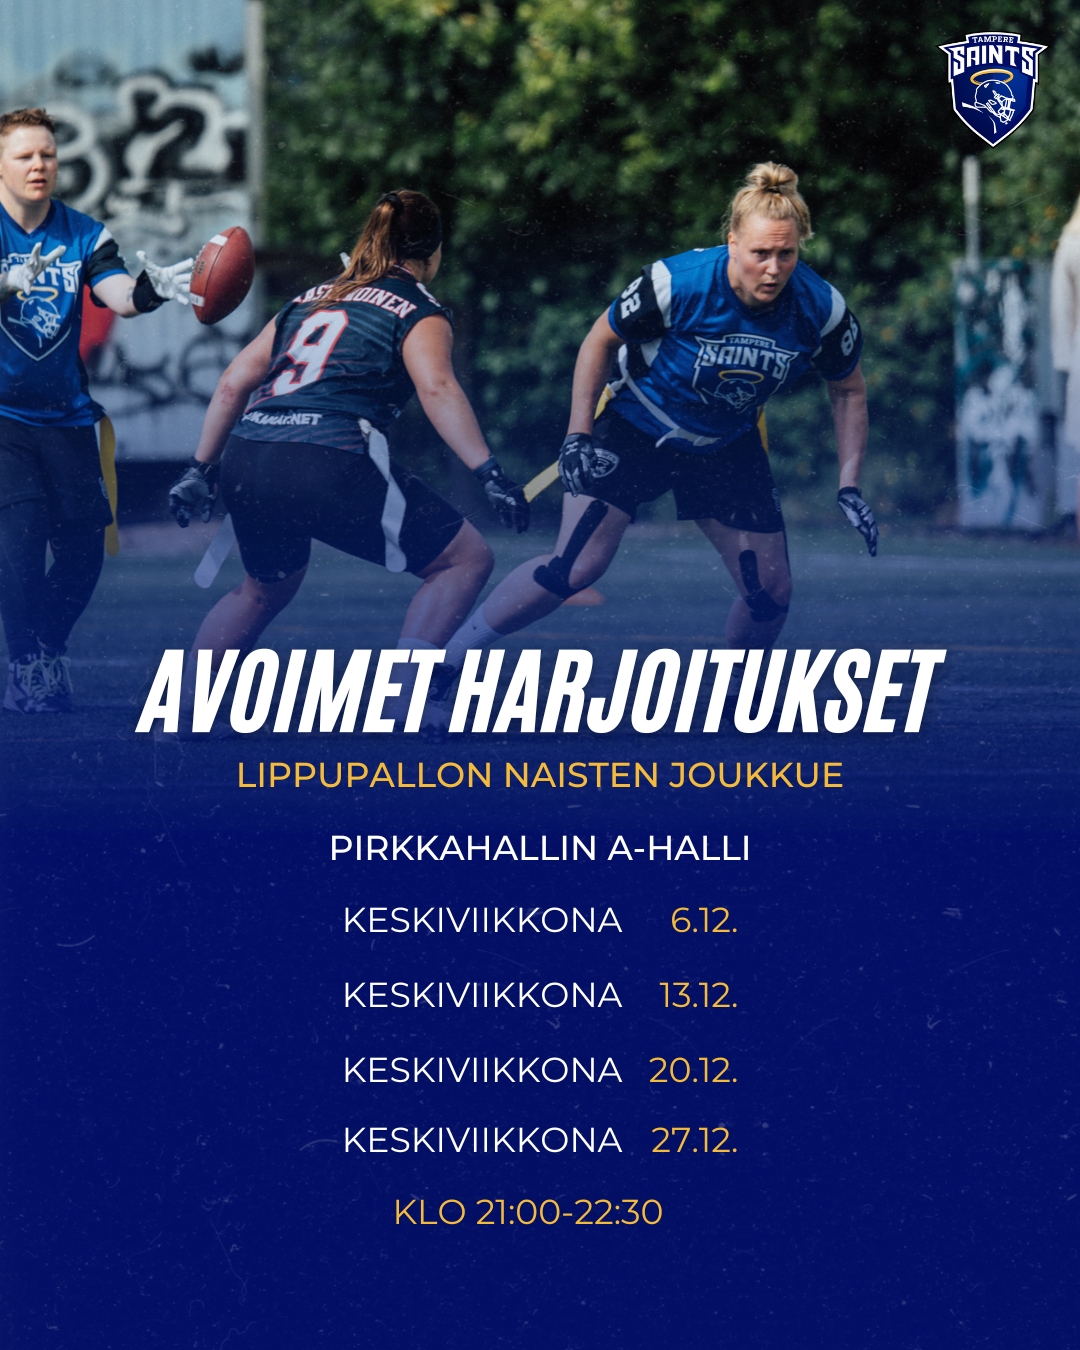 Tampere Saints lippupallo avoimet harjoitukset